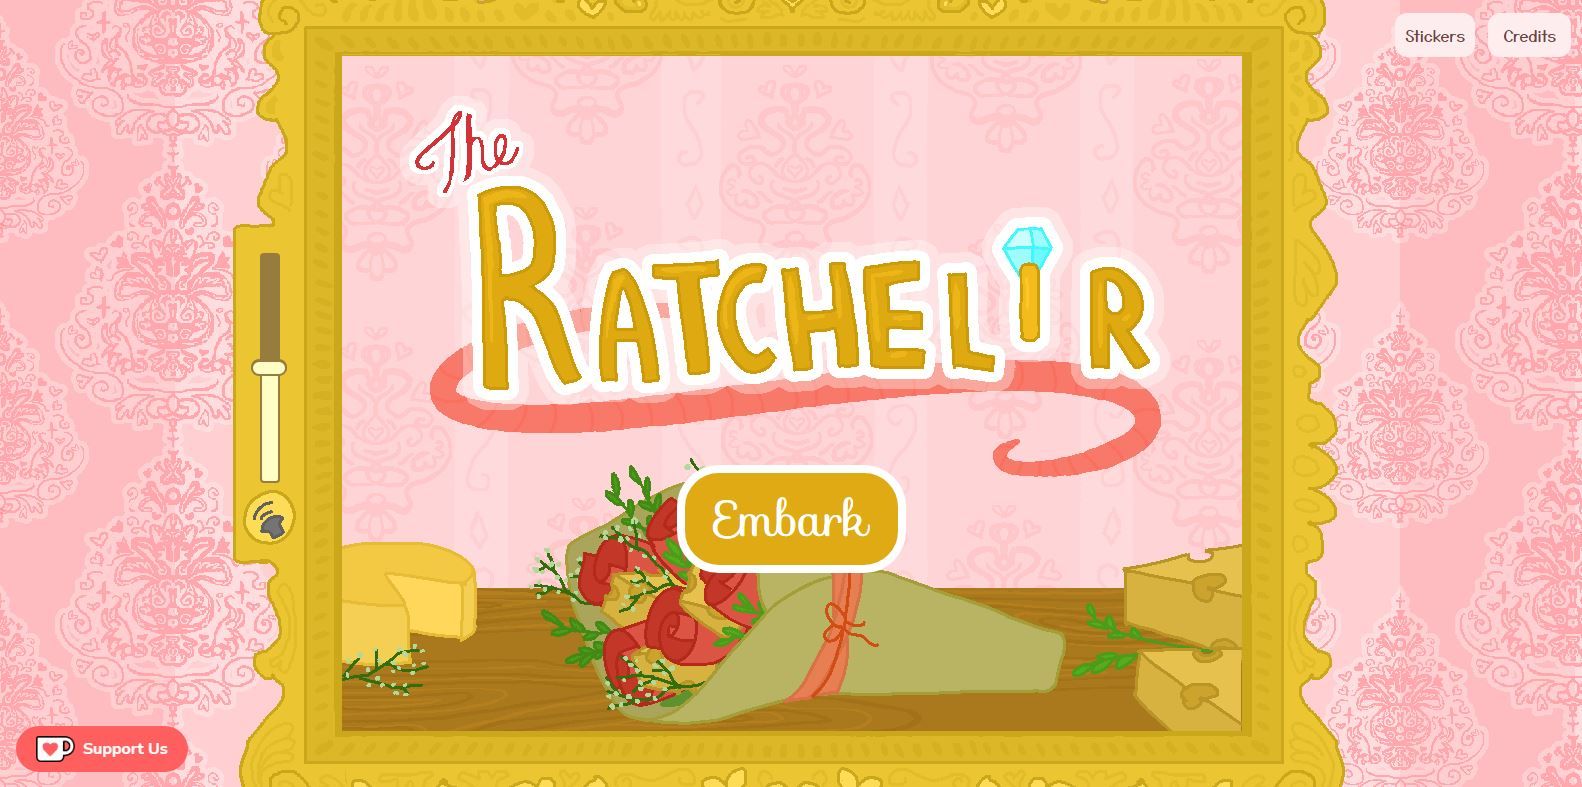 The Ratchelor, The Bachelor Game